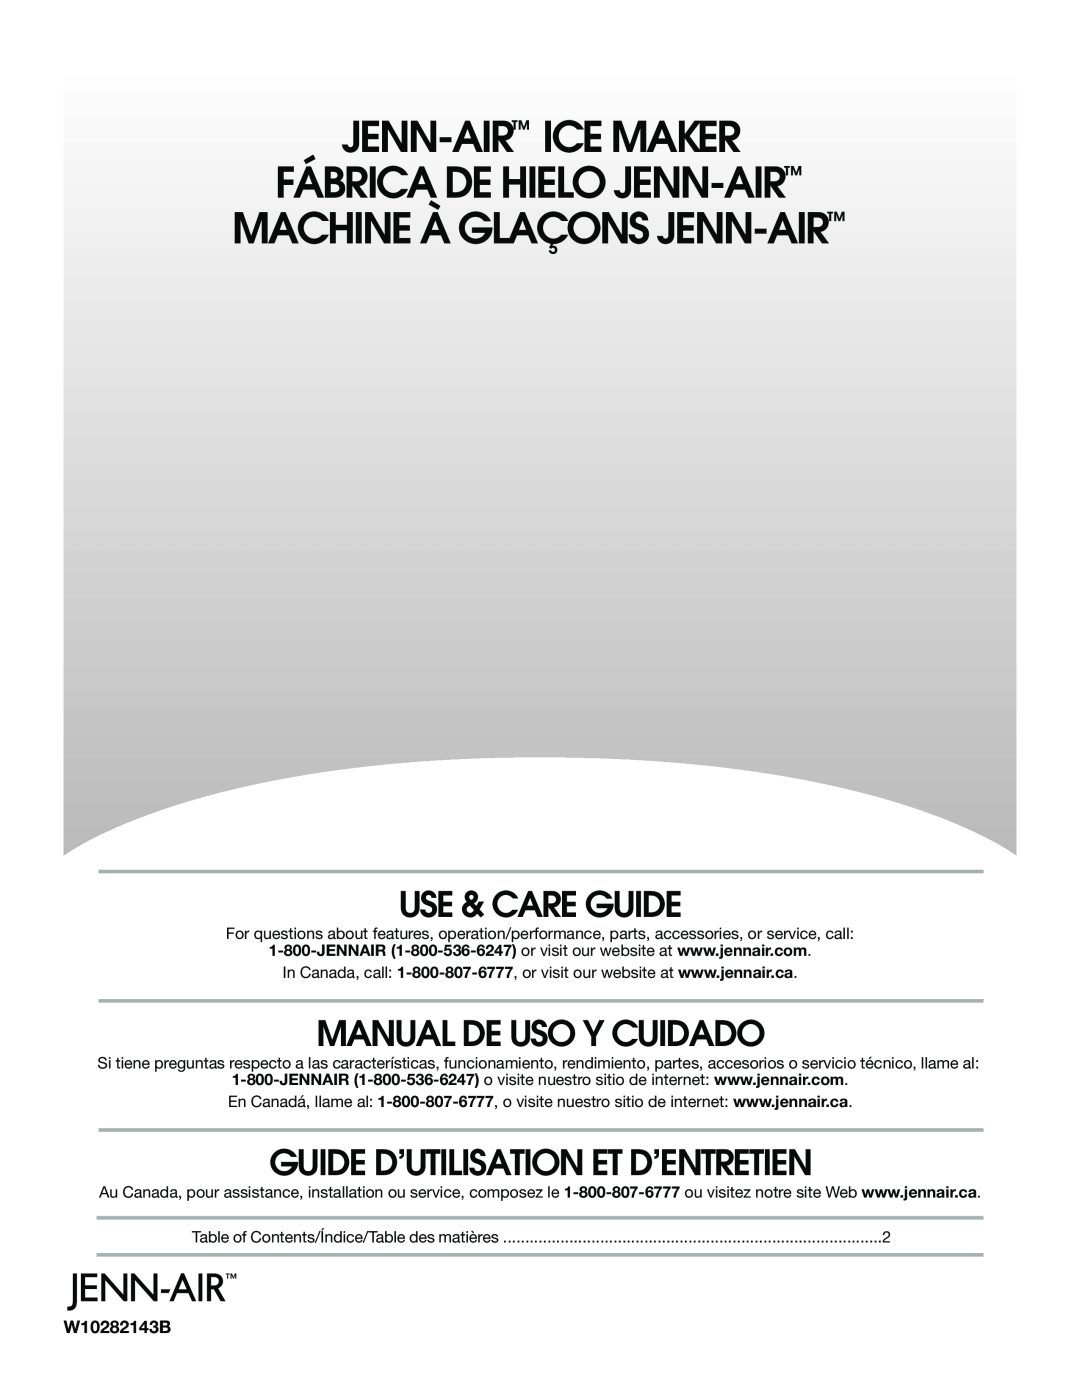 Jenn-Air W10282143B manual Use & Care Guide, Manual De Uso Y Cuidado, Guide D’Utilisation Et D’Entretien 